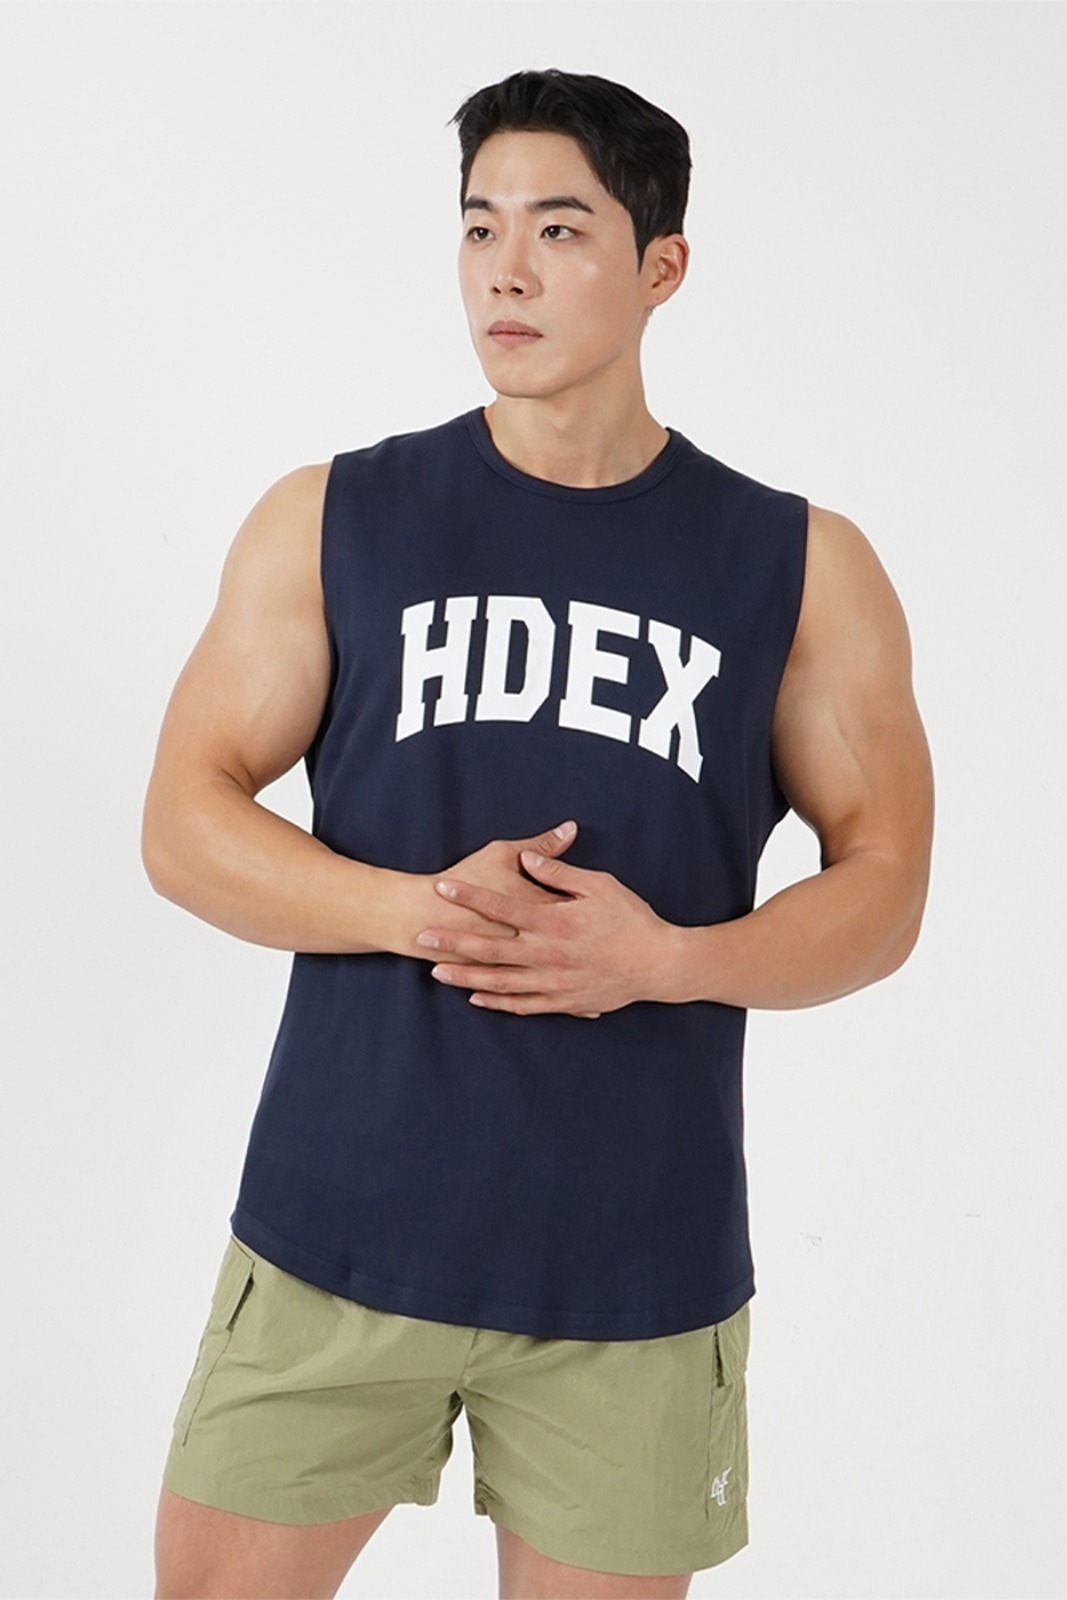 HDEX, 아치 로고 민소매 5 color